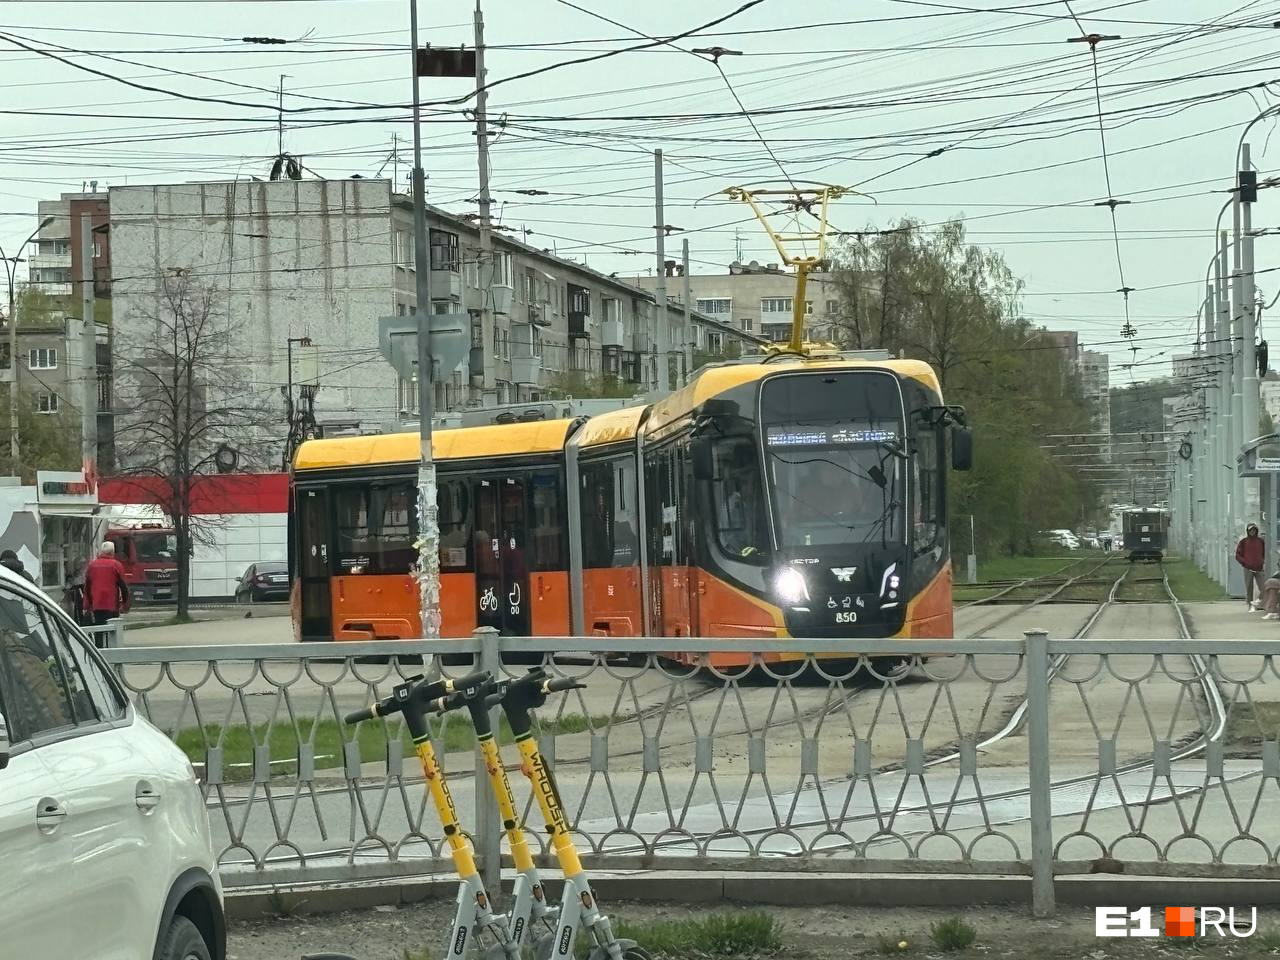 В Екатеринбурге появилась хитрая схема, как ловить «зайцев» в общественном транспорте